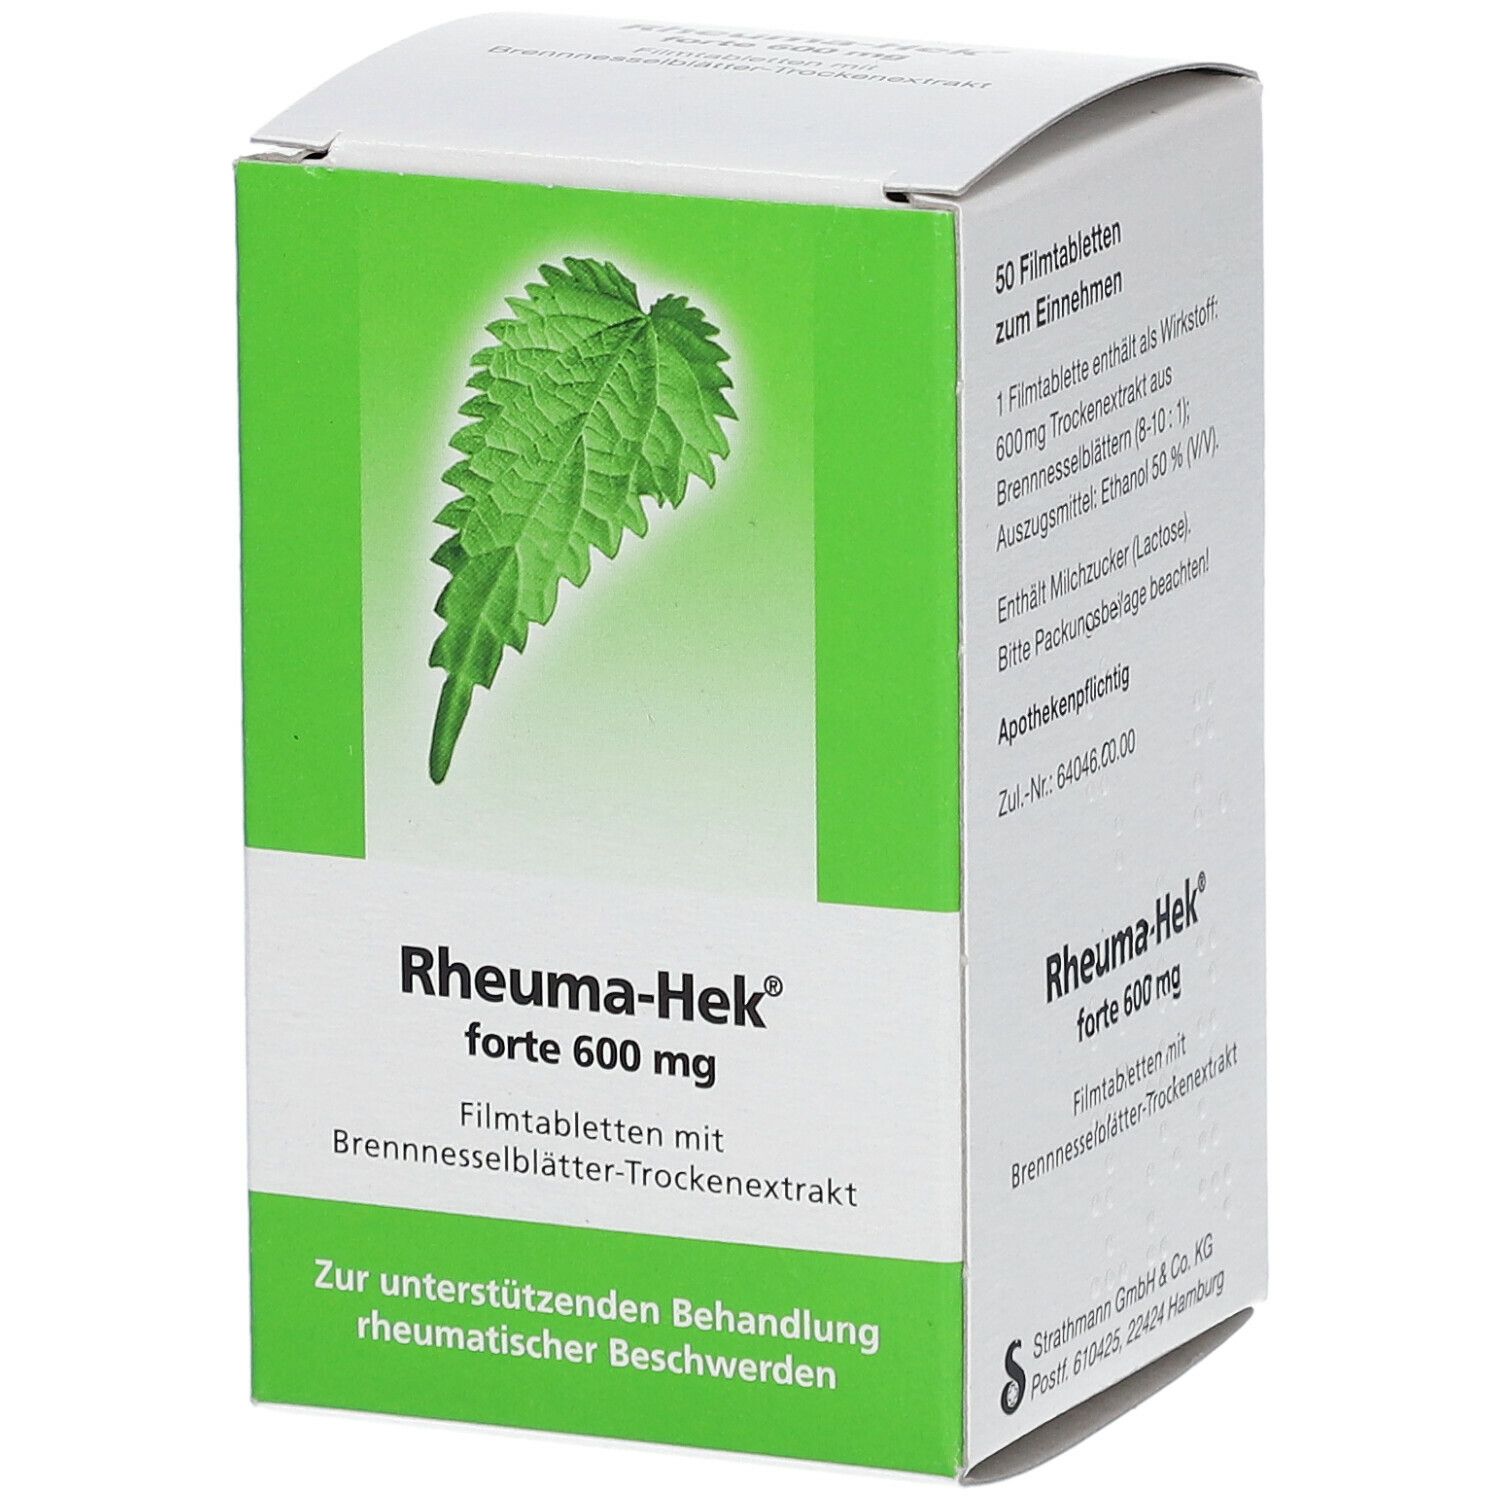 Rheuma-Hek® forte 600 mg